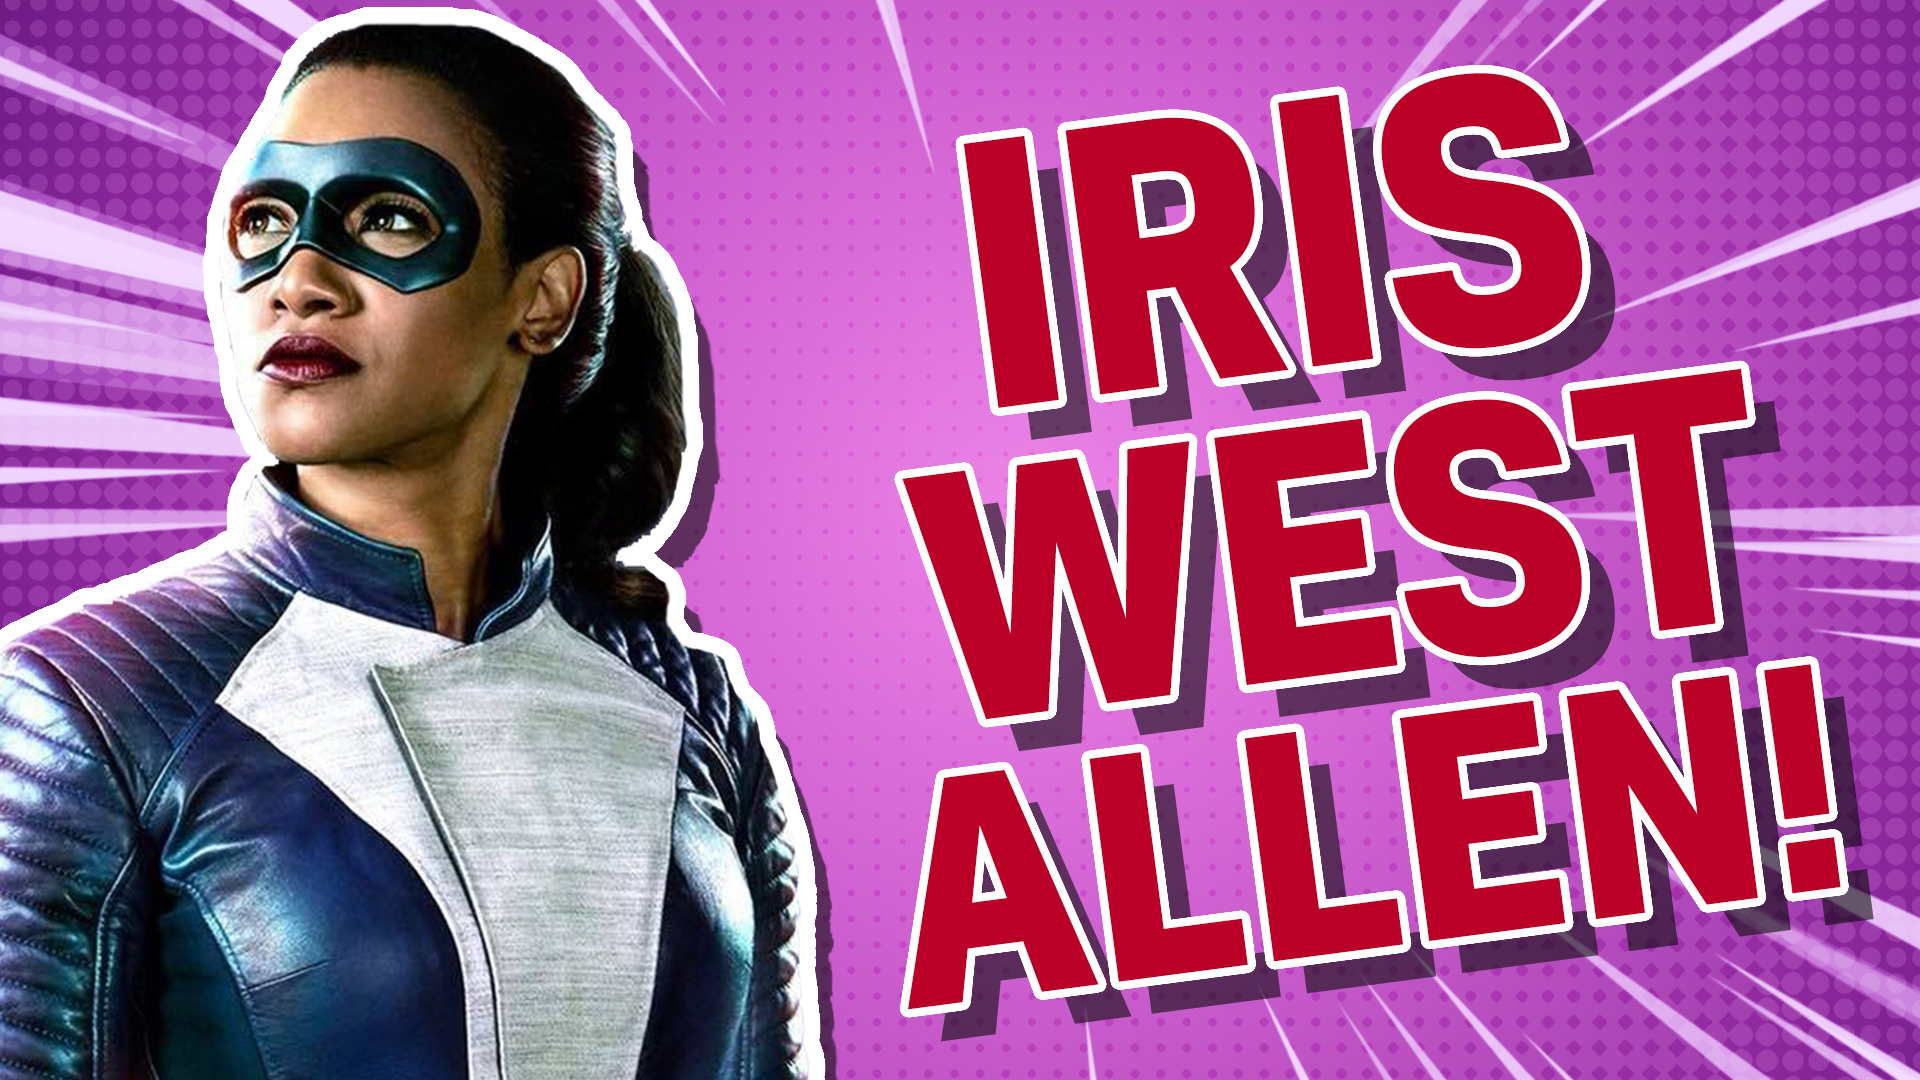 Iris West Allen